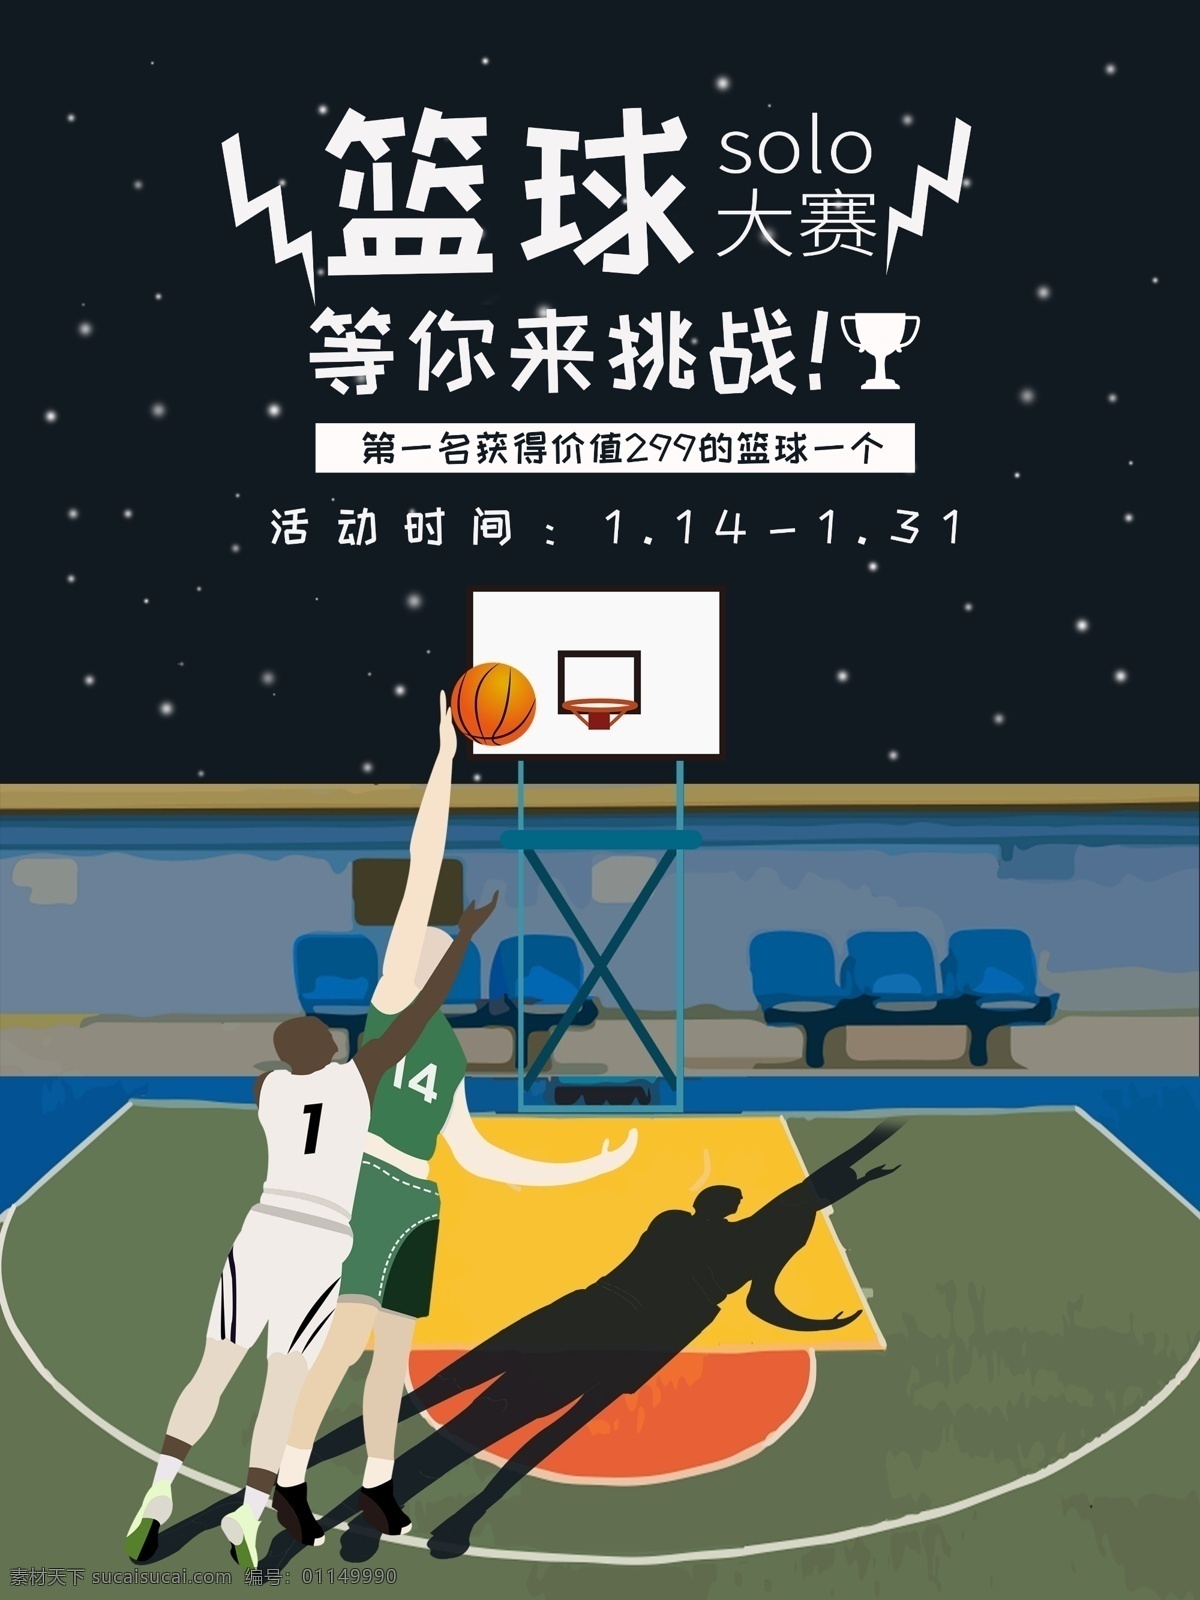 原创 手绘 插画 篮球 solo 大赛 比赛 海报 篮球比赛 篮球大赛海报 比赛海报 体育海报 竞技海报 篮球单挑 篮球训练海报